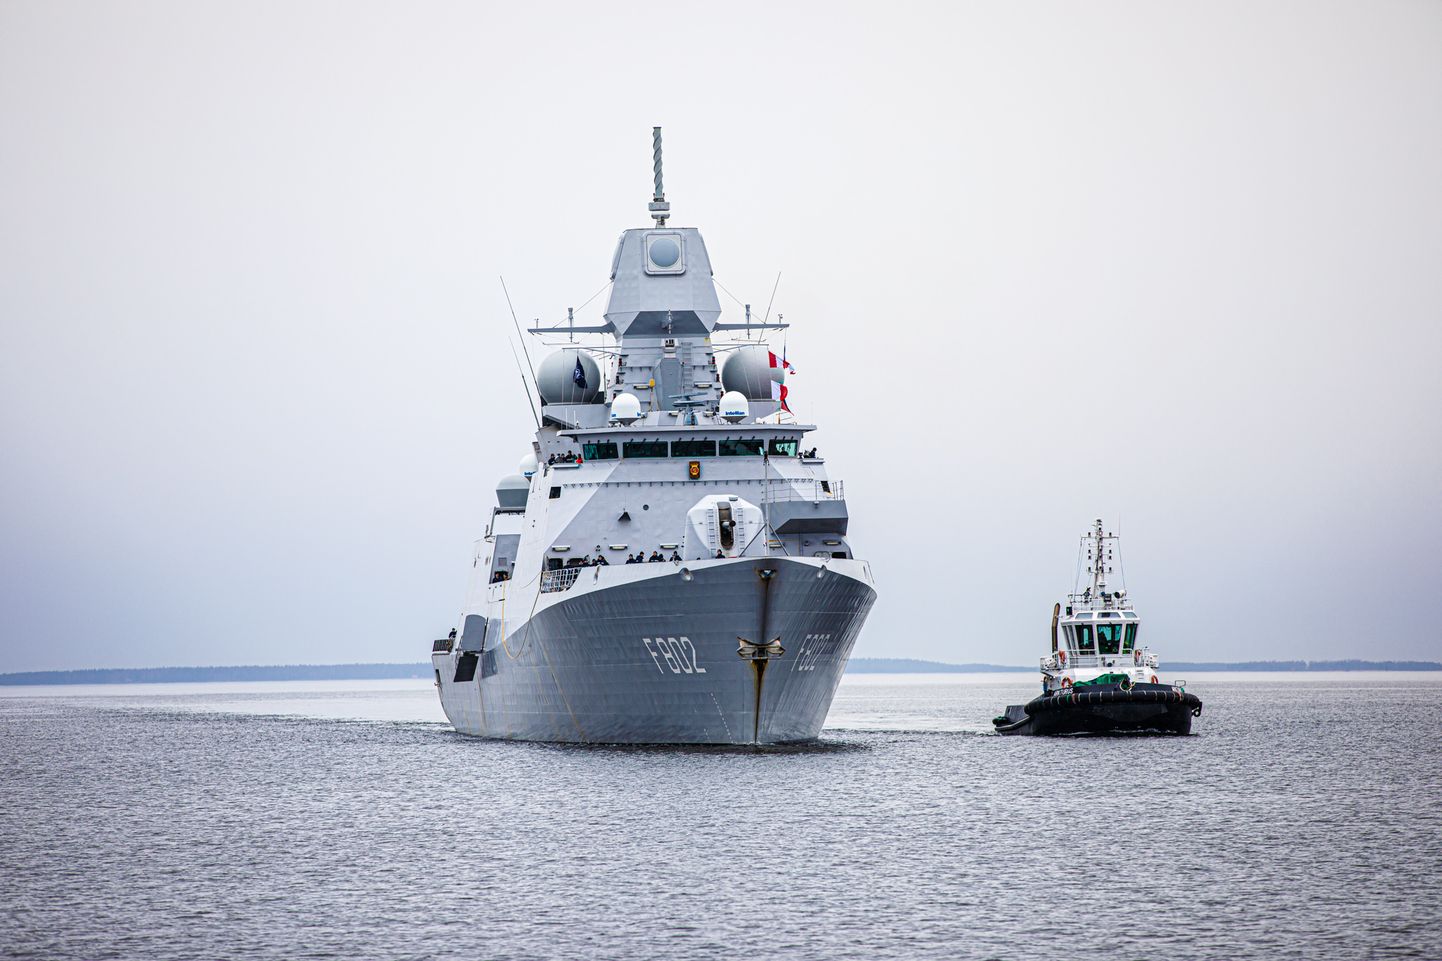 Таллинн посетили четыре военных корабля 1-й постоянной военно-морской группы НАТО